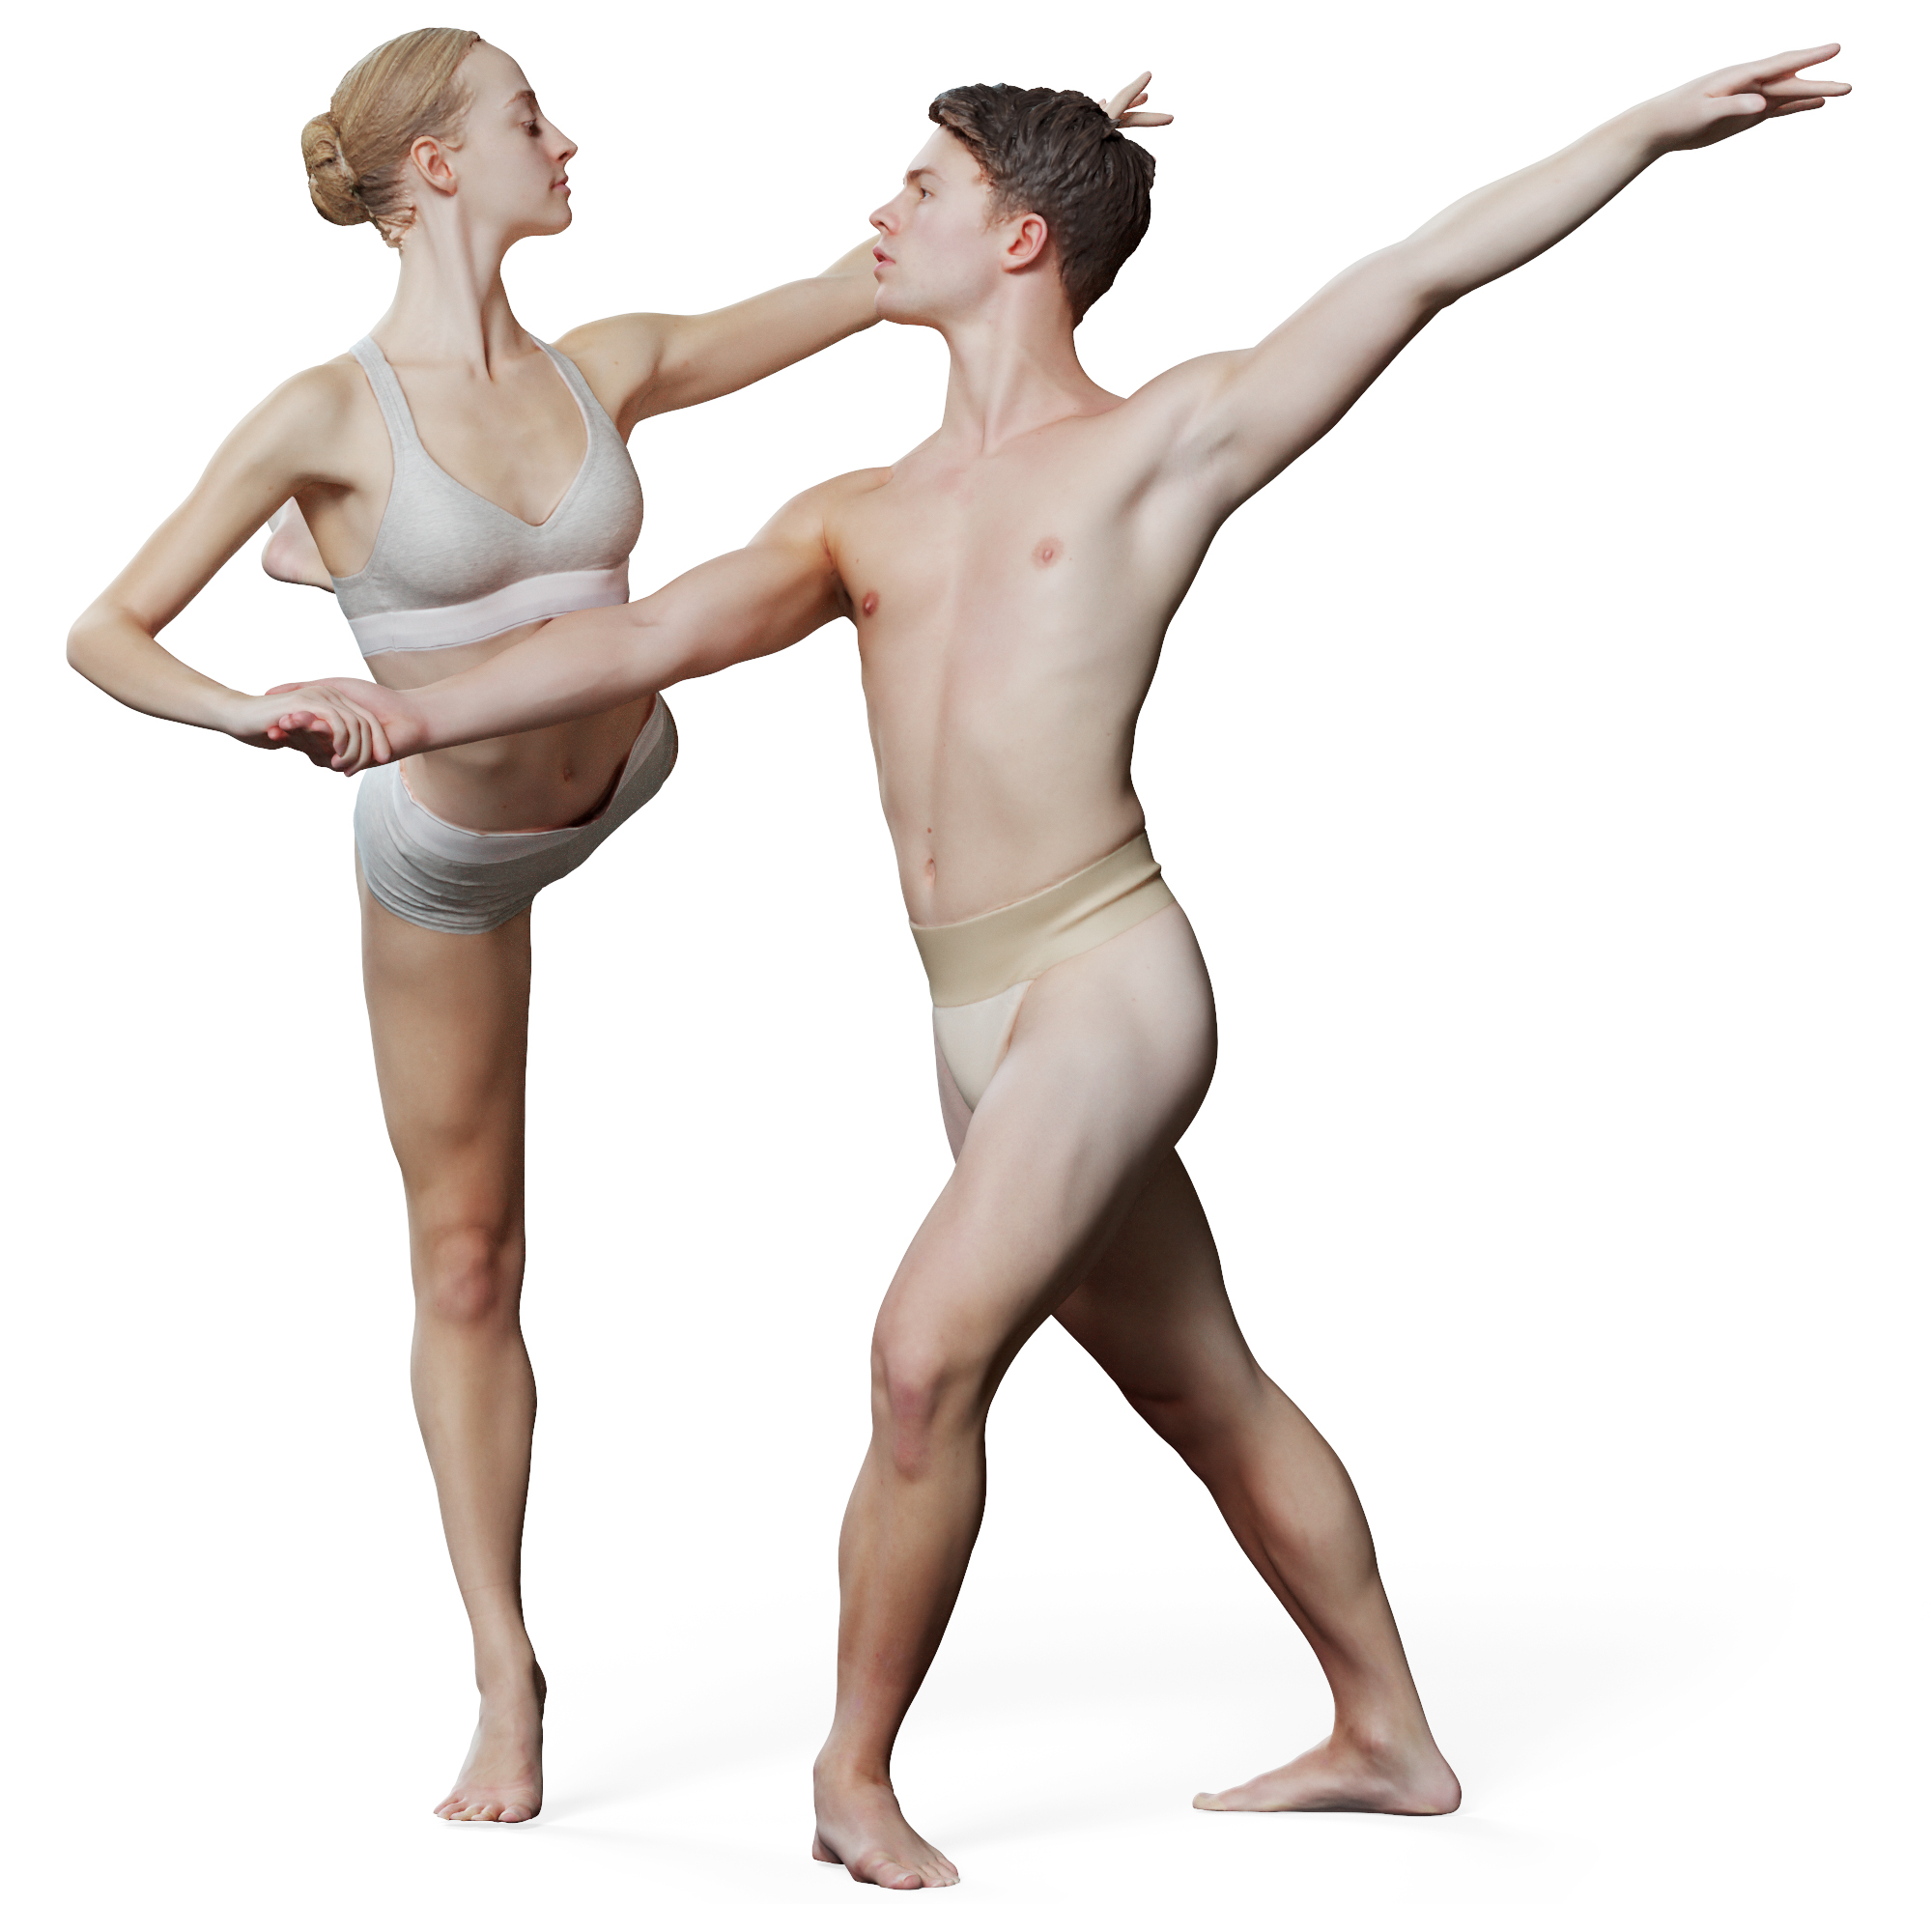 Ballet Dance Duo in Love